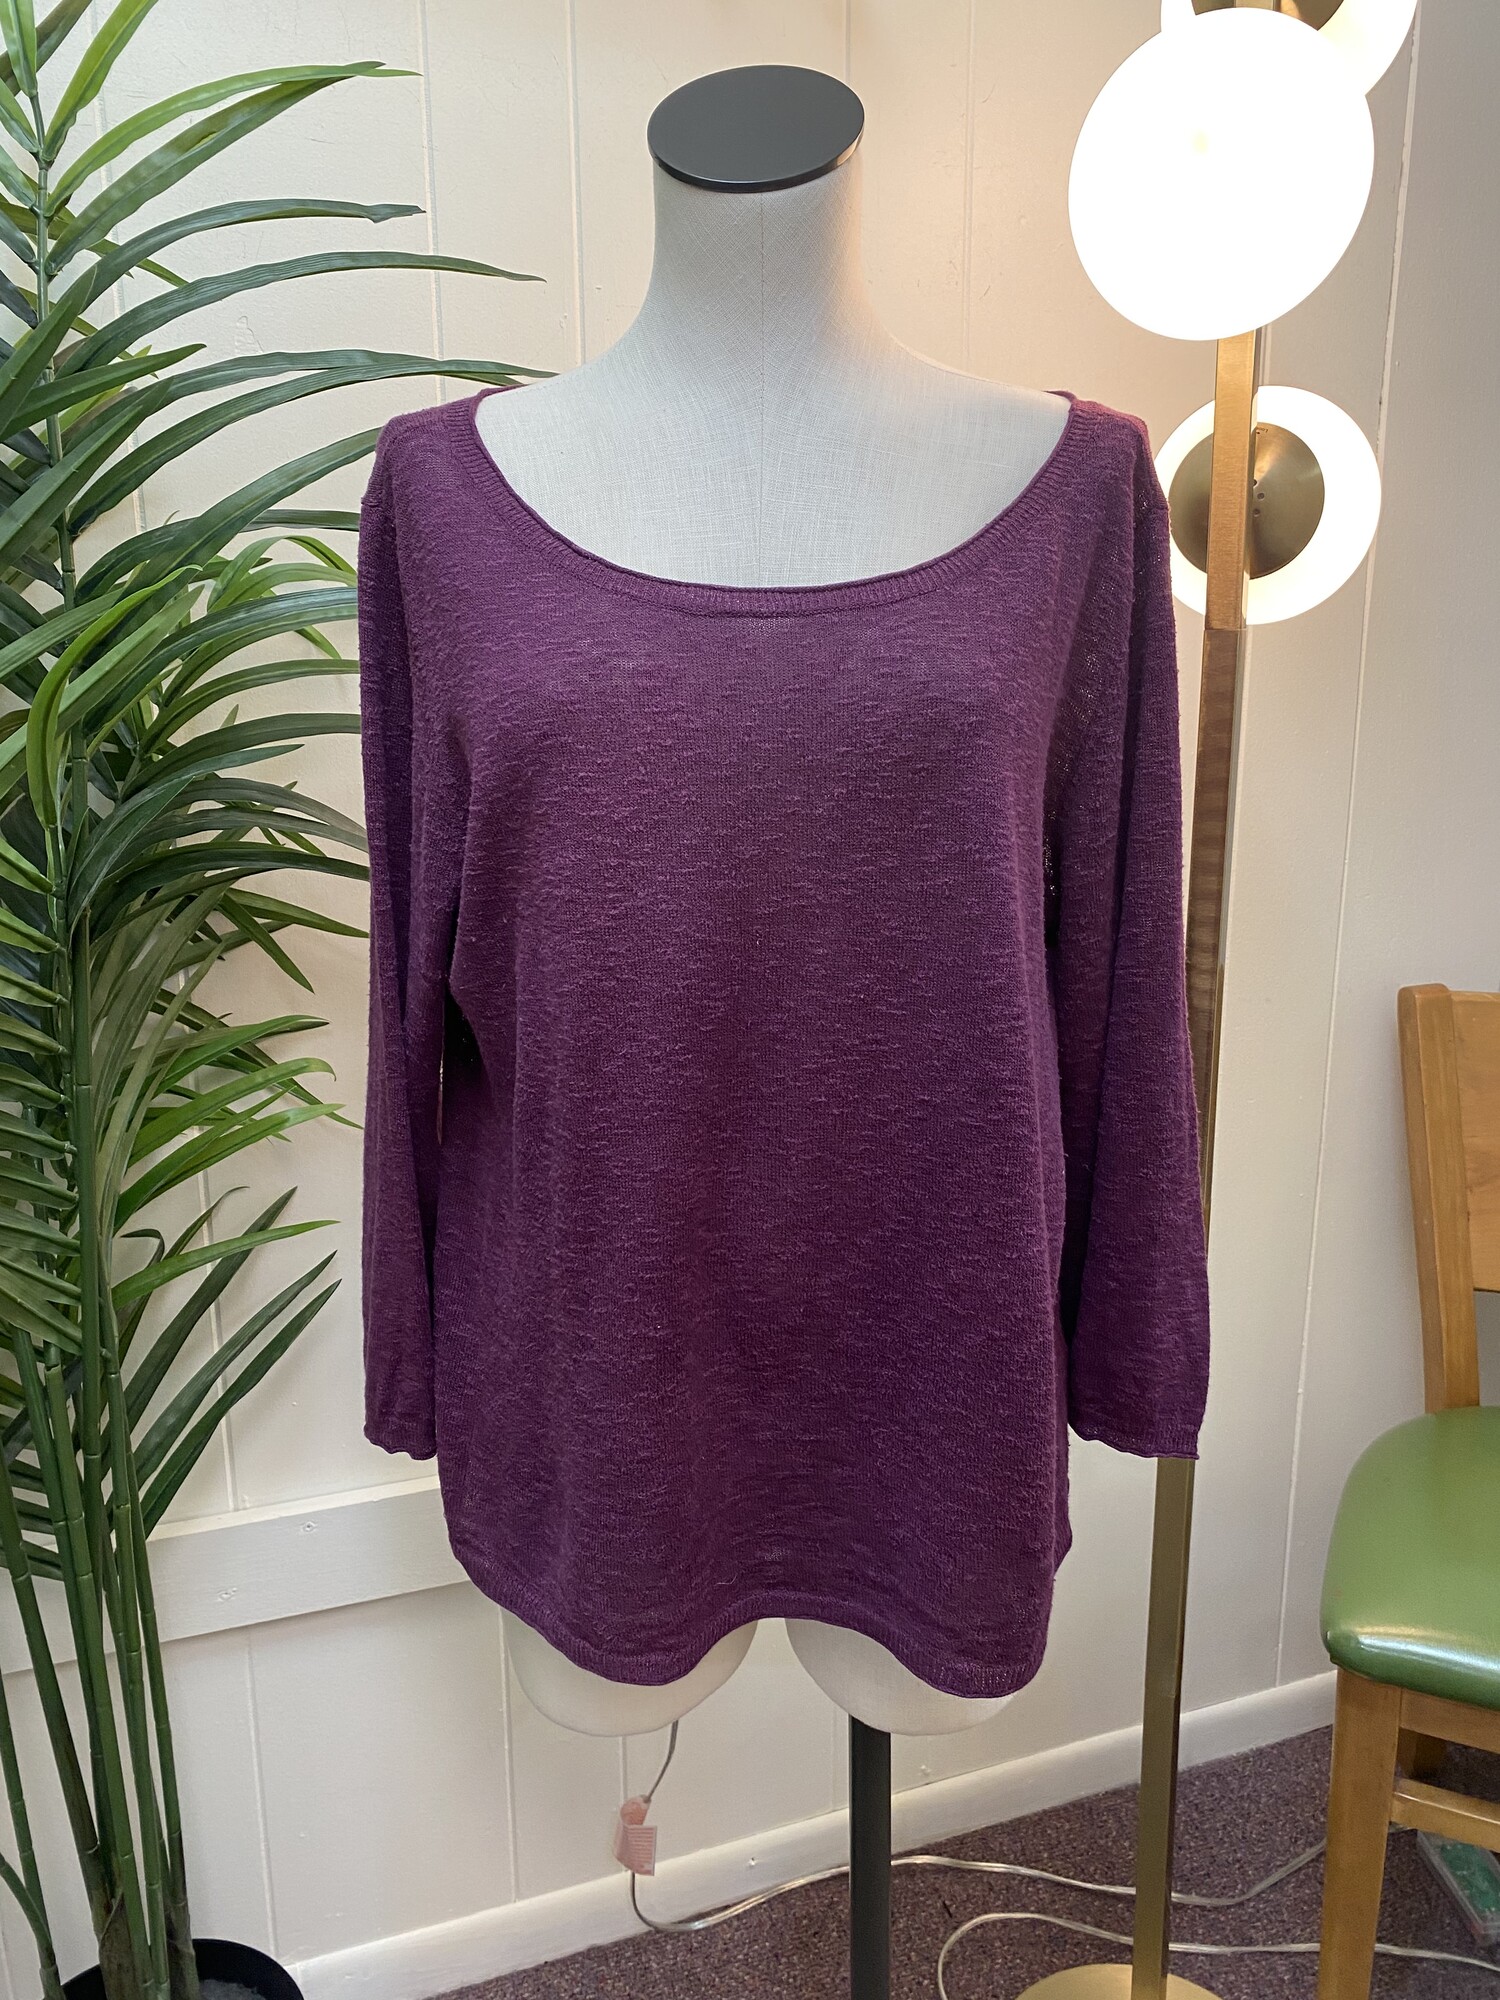 Sweater Slubby Knit Scoop, Purple, Size: Lg